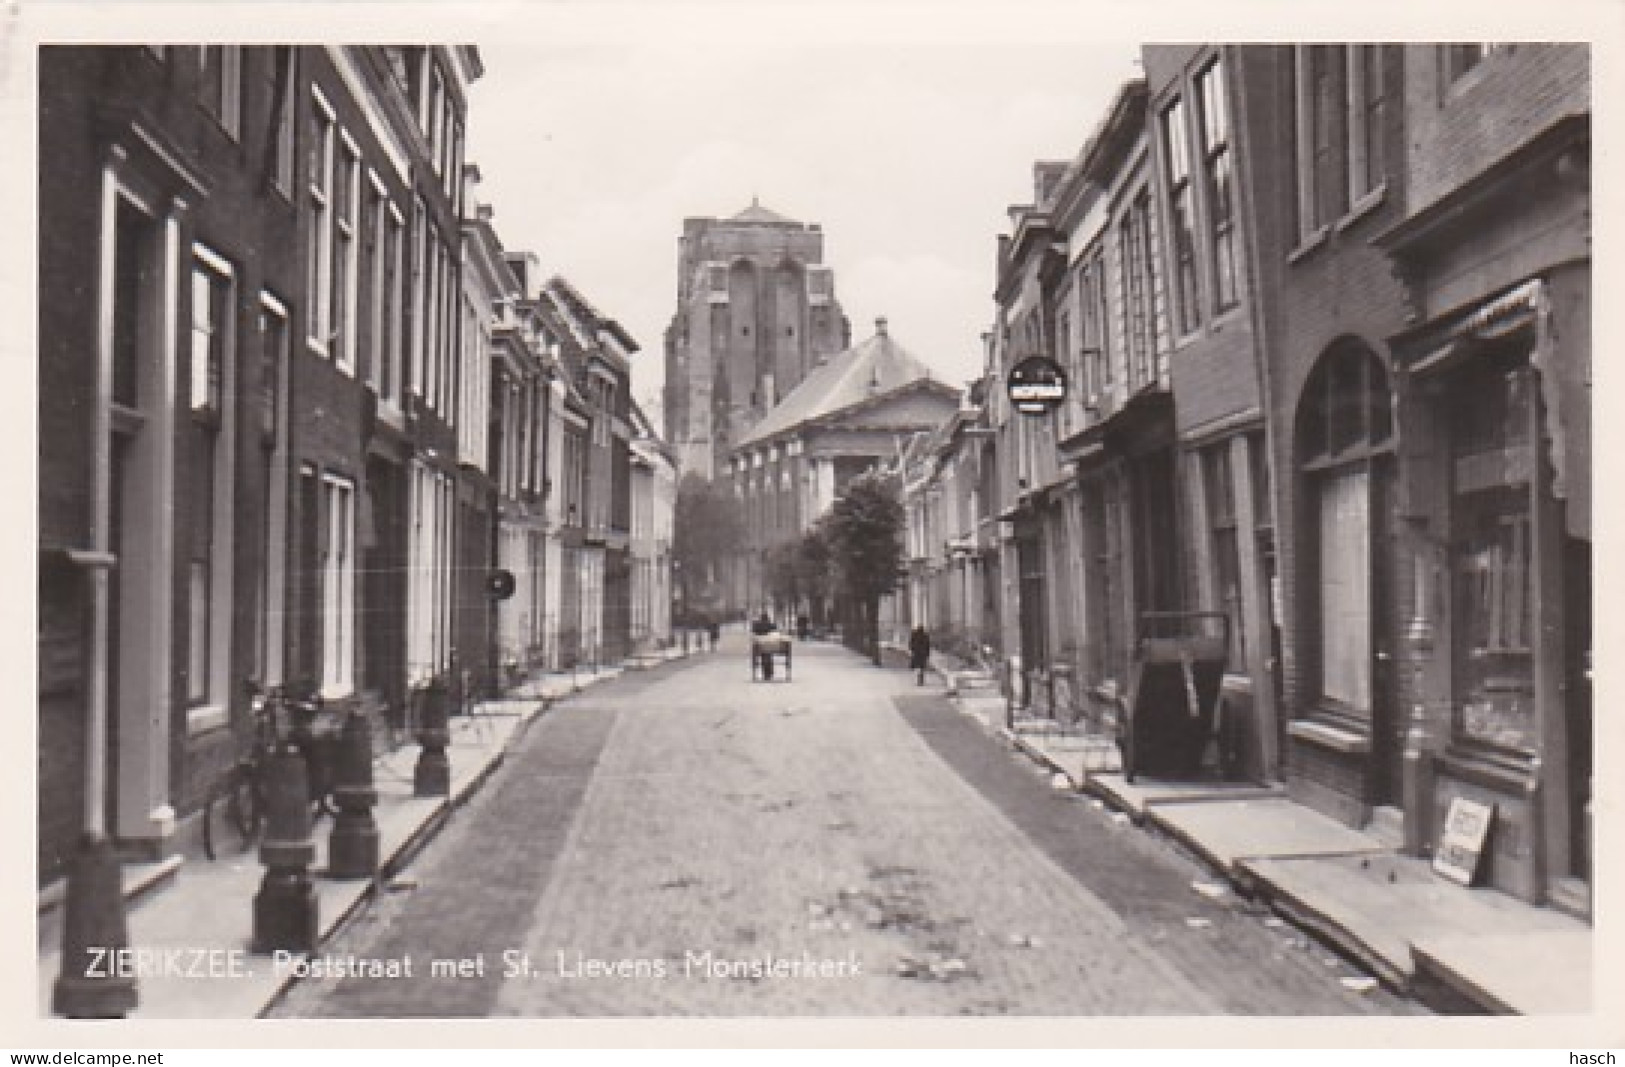 485567Zierikzee, Poststraat Met St. Lievens Monsterkerk. (FOTOKAART) (Kras Bij De Kar) - Zierikzee